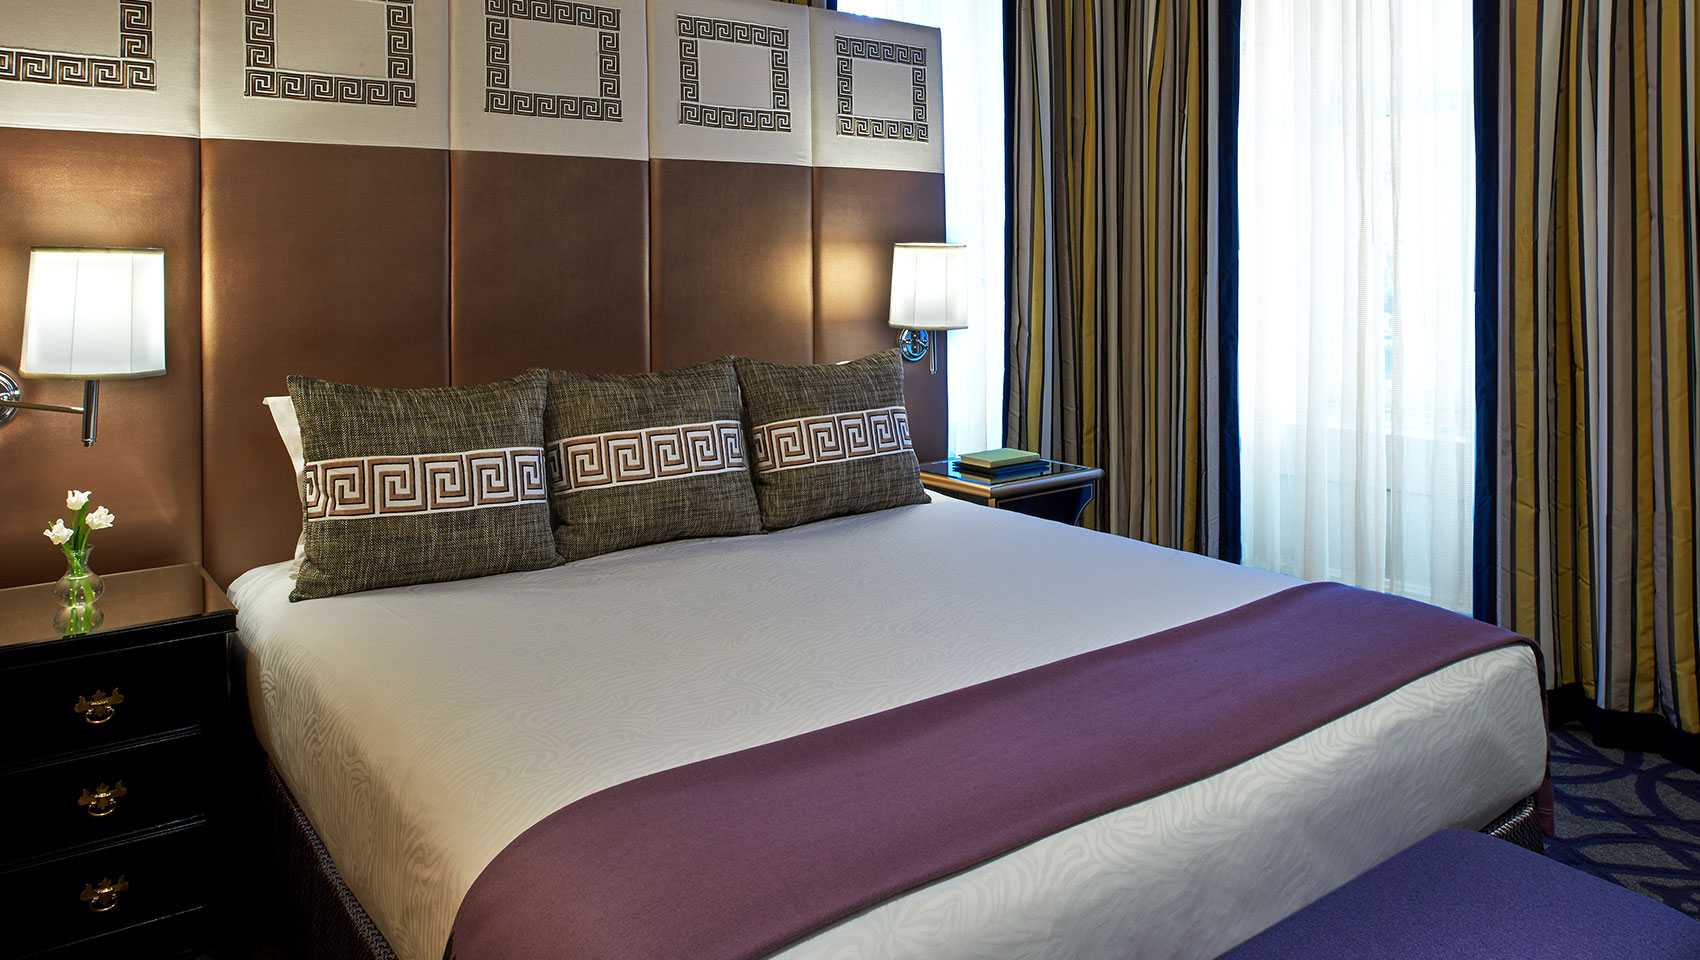 Hotel Monaco Washington, D.C. (184 guestrooms and suites)